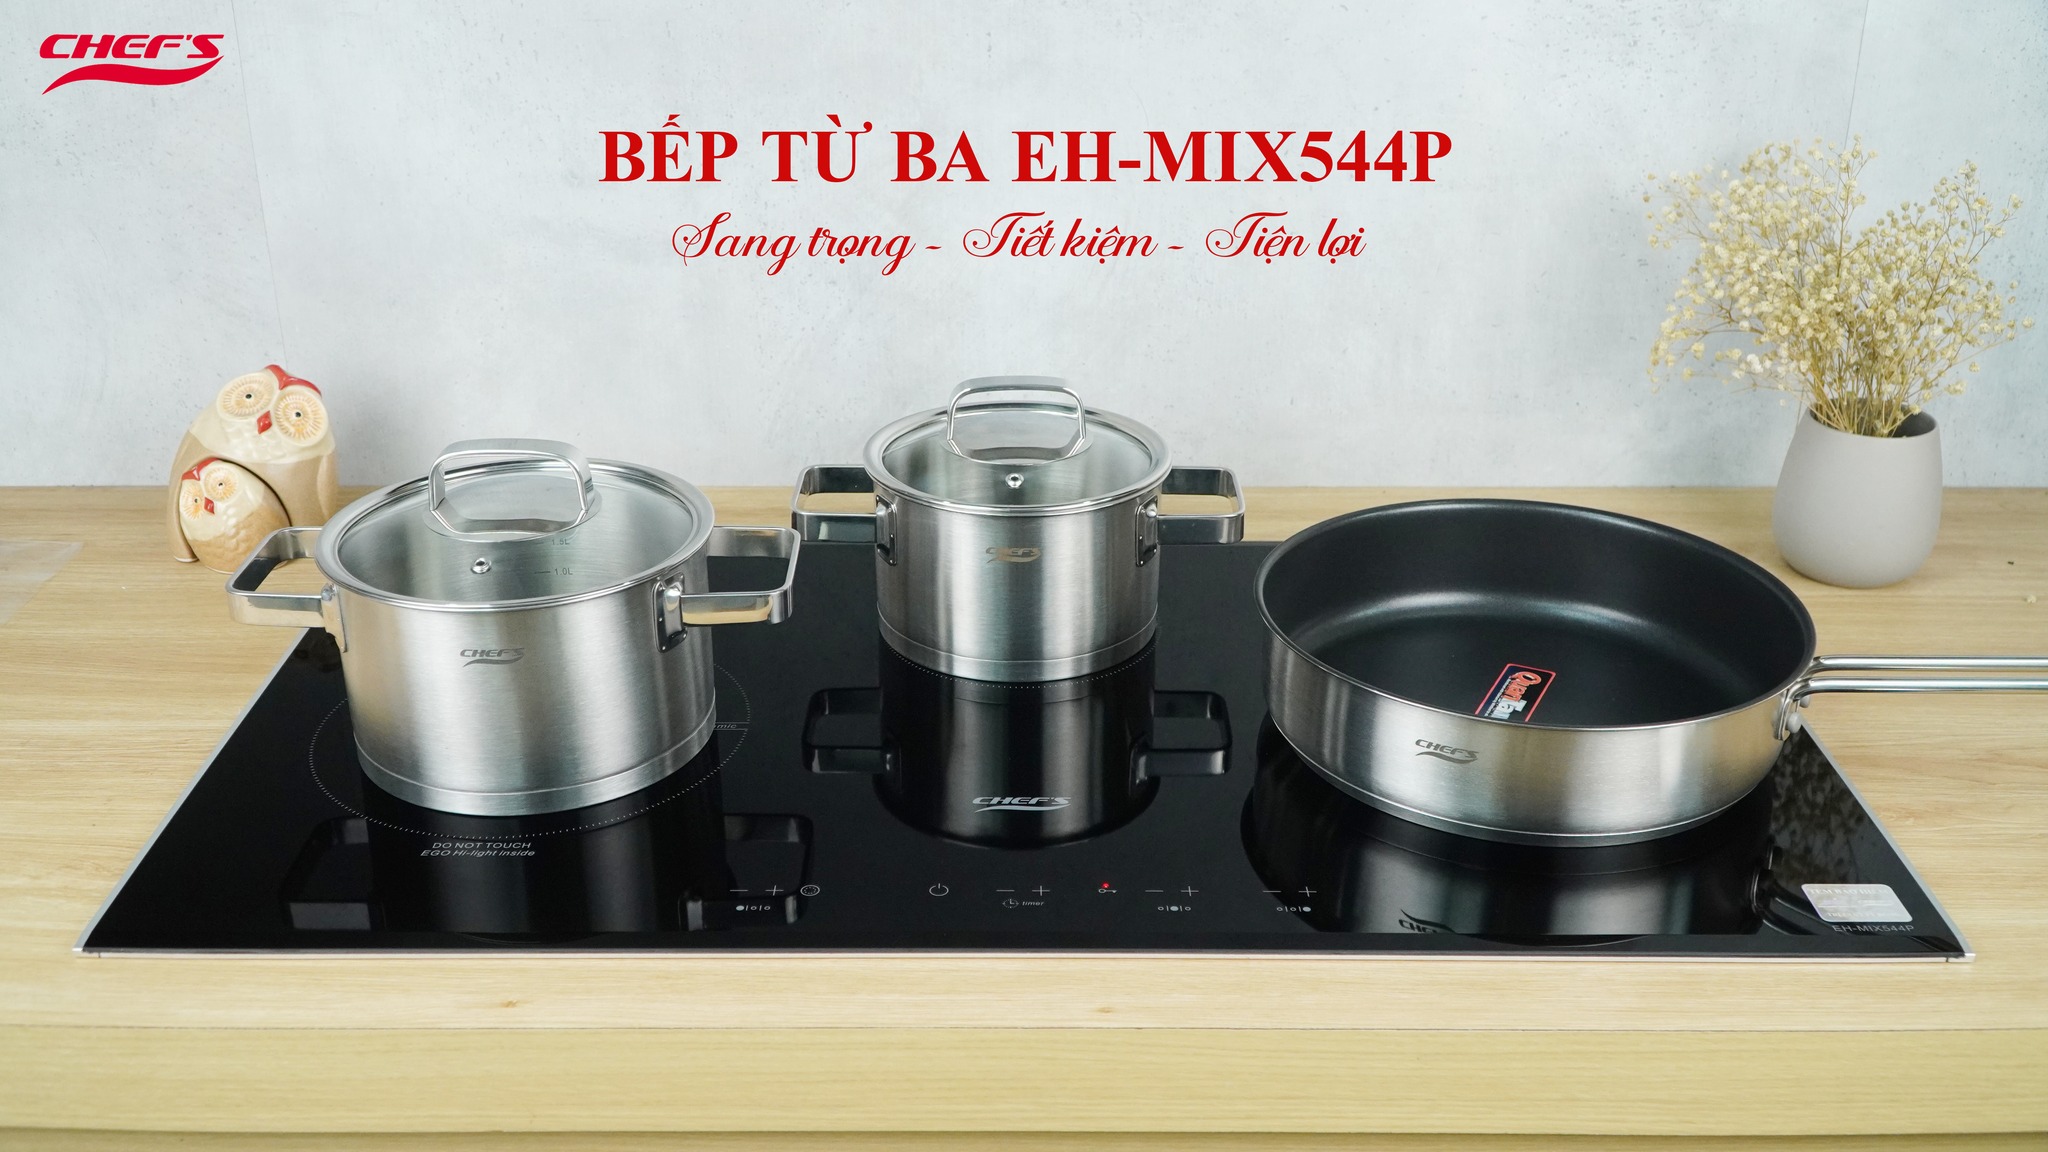 Bếp 3 vùng nẫu EH-MIX544P cho bạn thỏa sức nấu nướng mỗi ngày